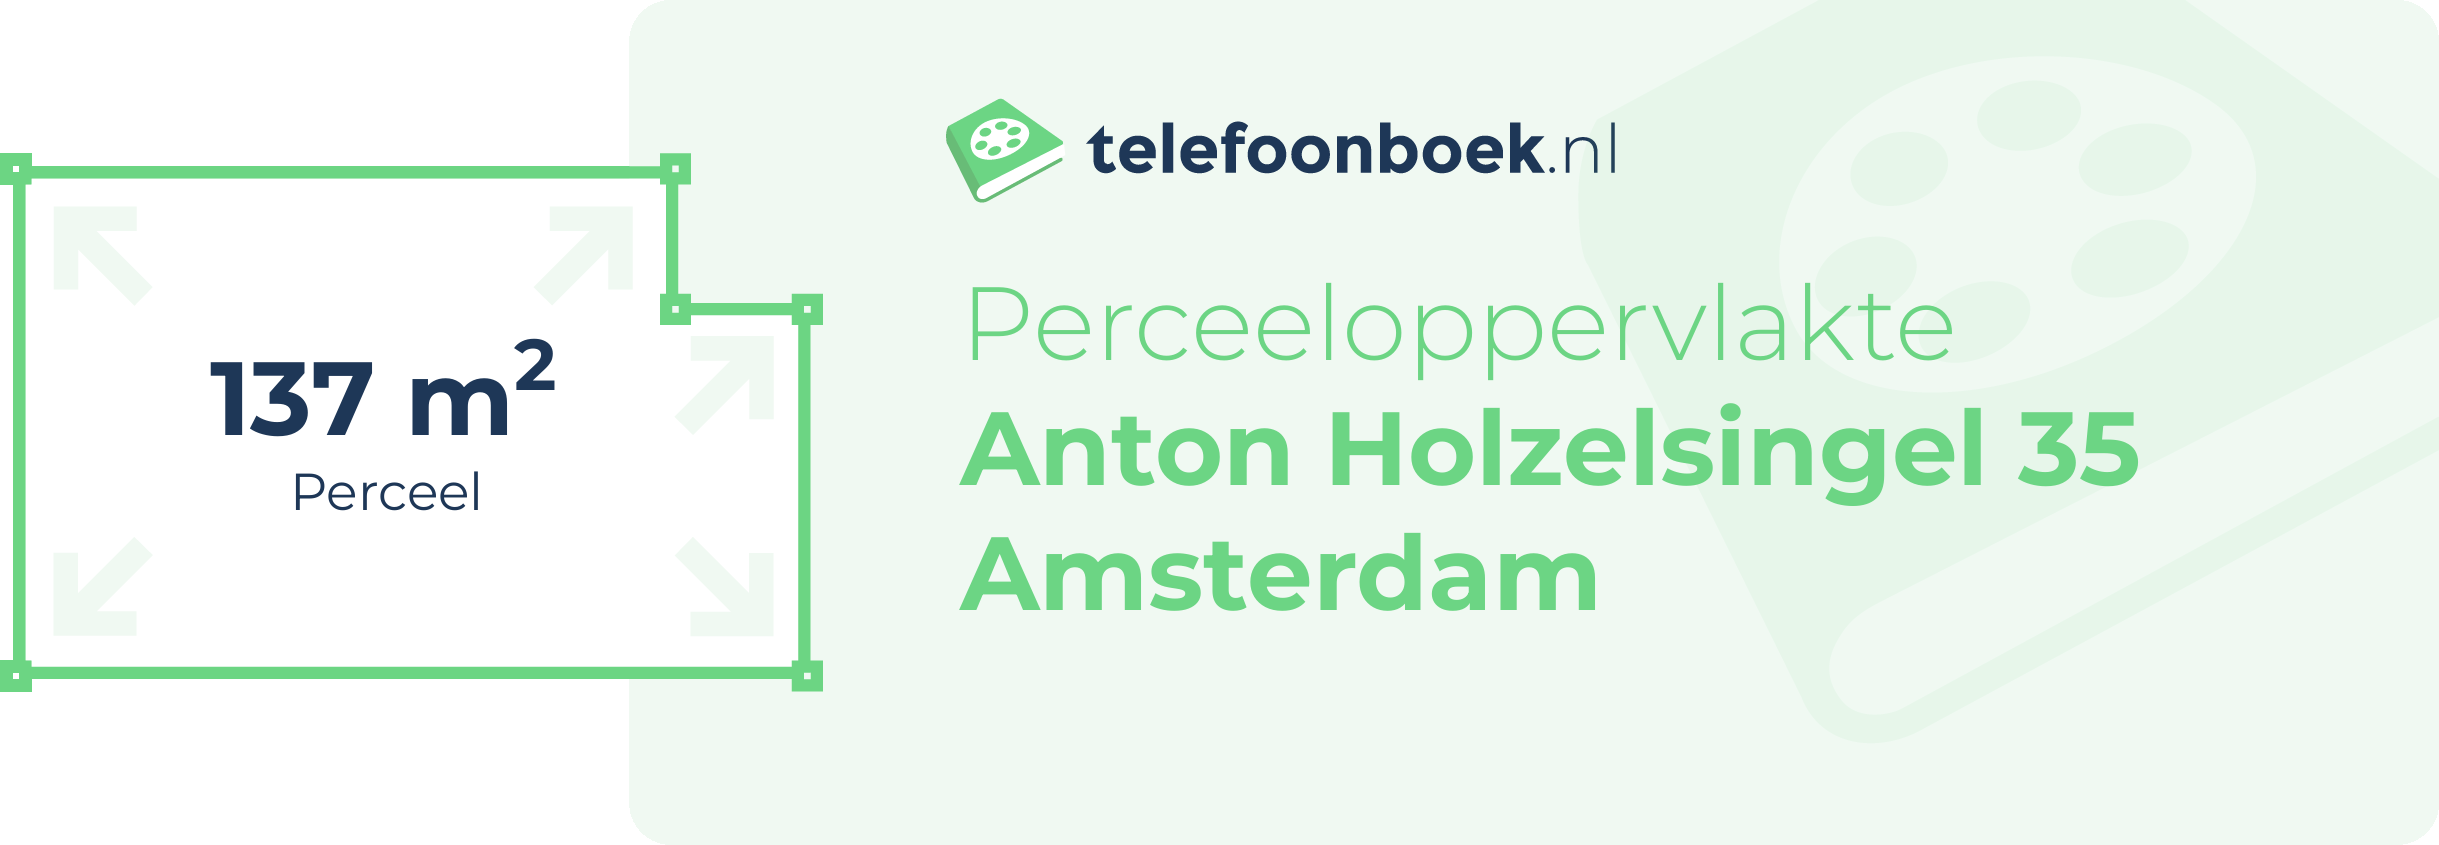 Perceeloppervlakte Anton Holzelsingel 35 Amsterdam